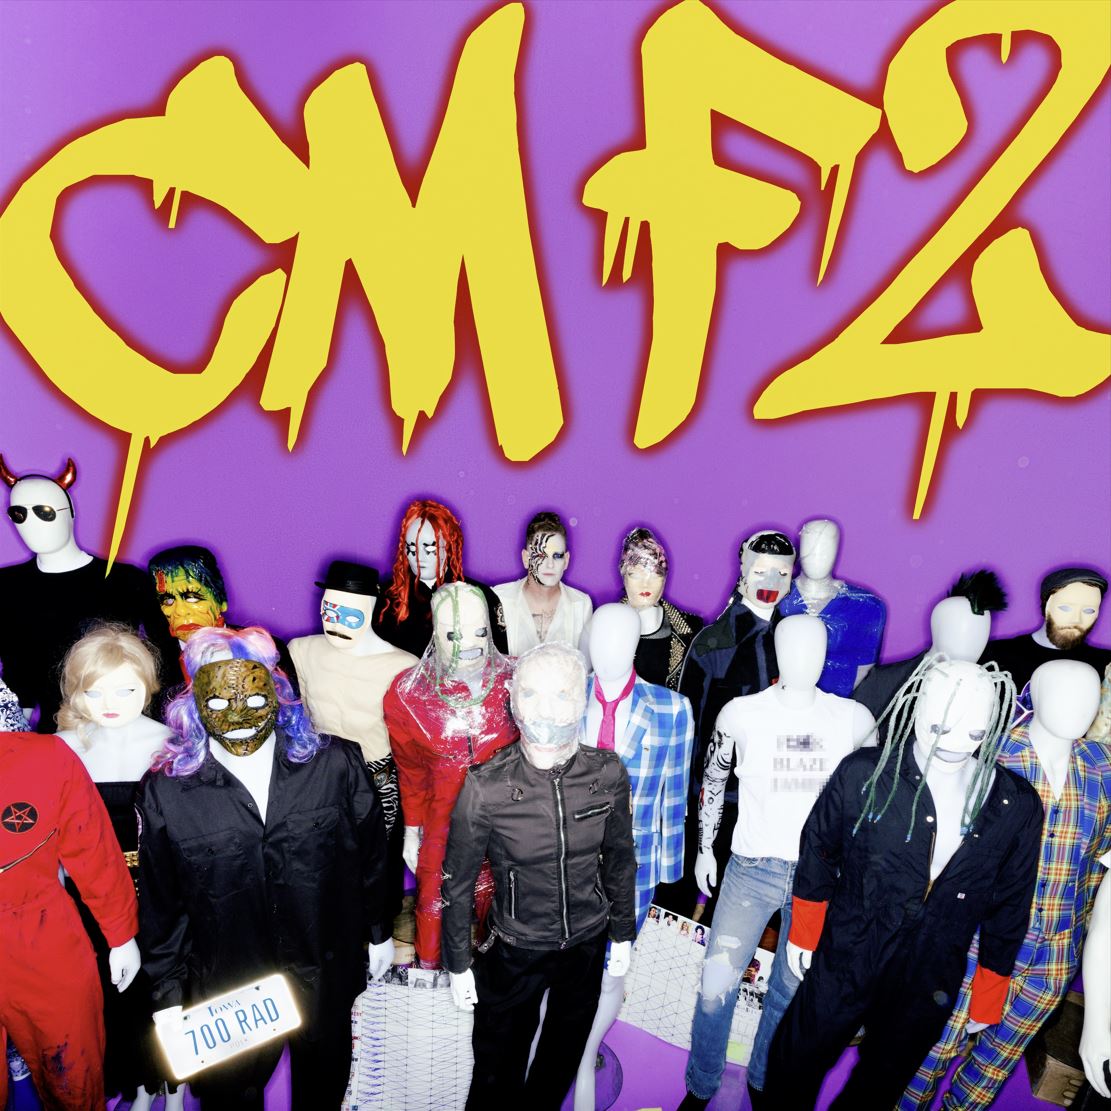 Das Albumcover "CMF2" von Corey Taylor ist lila. Auf dem Bild sind verschiedene Puppen zu sehen, die in einer Menge stehen. Darüber steht der Albumname in Graffiti.